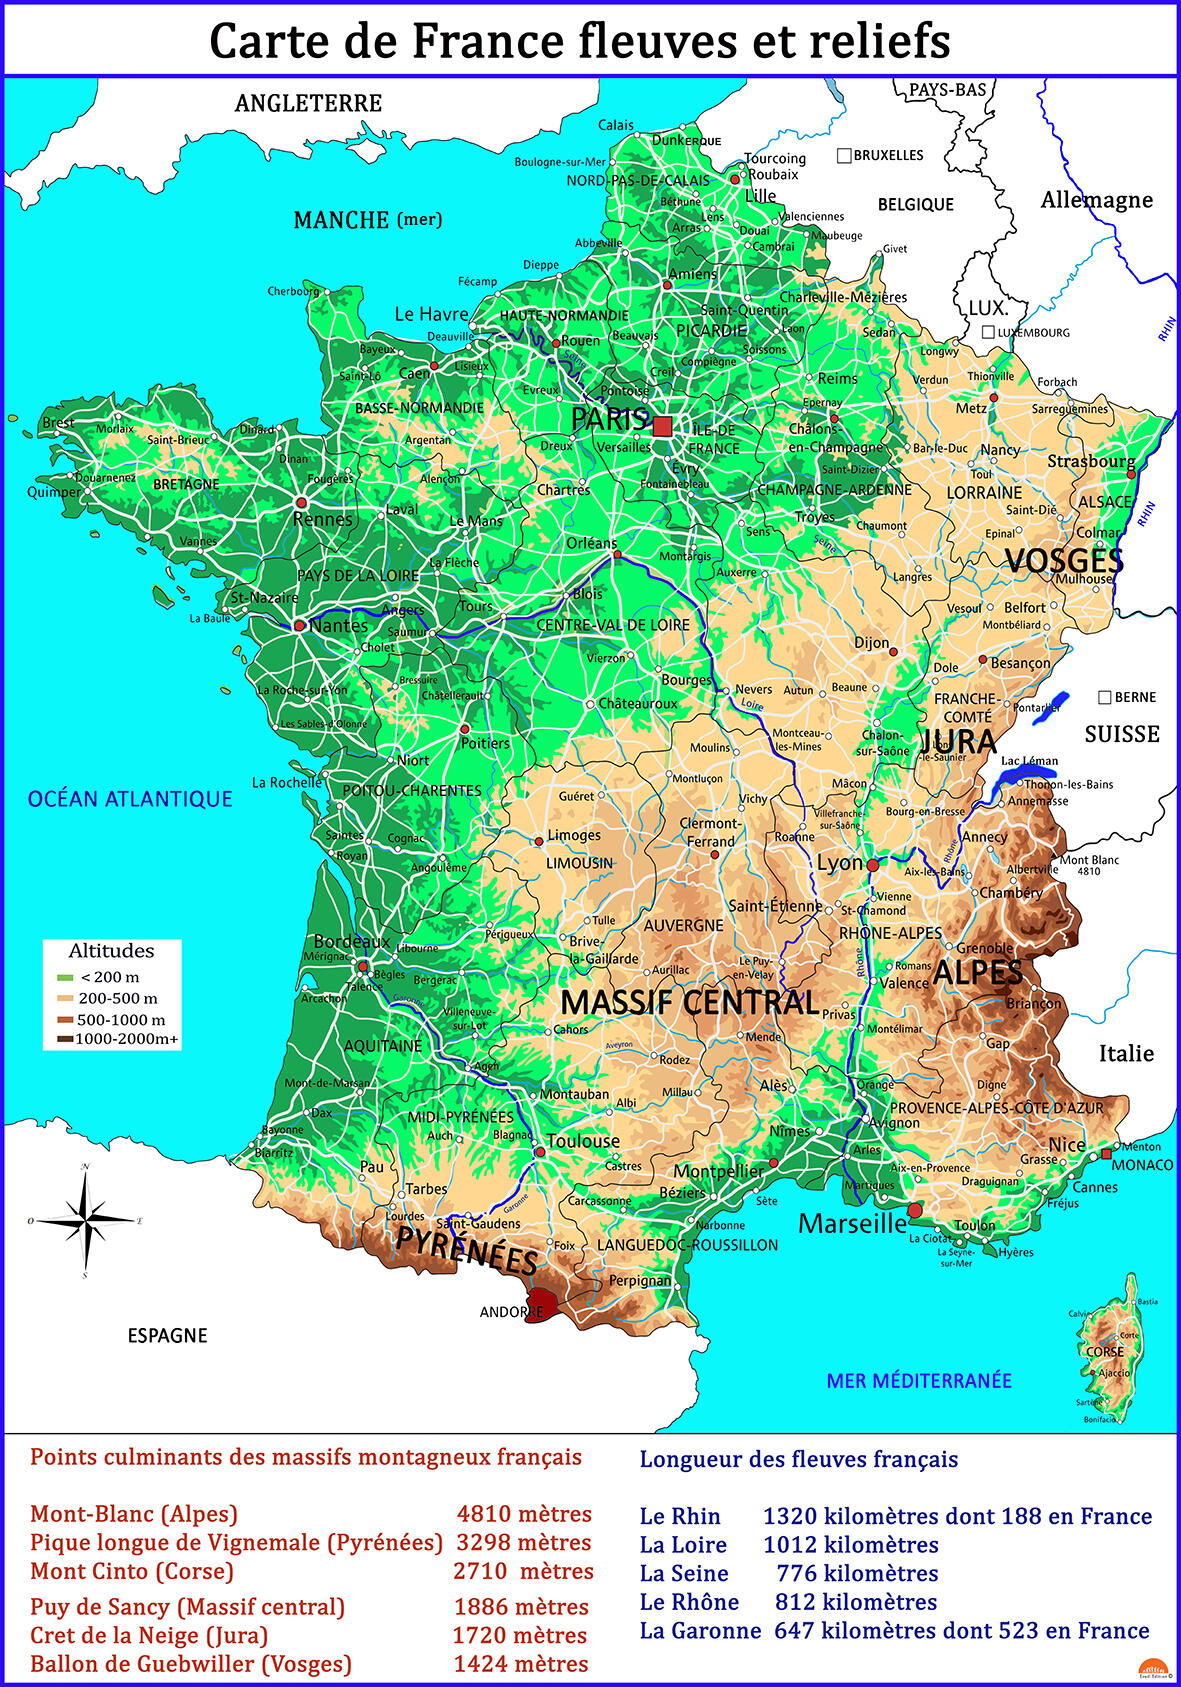 Carte de France fleuves et reliefs